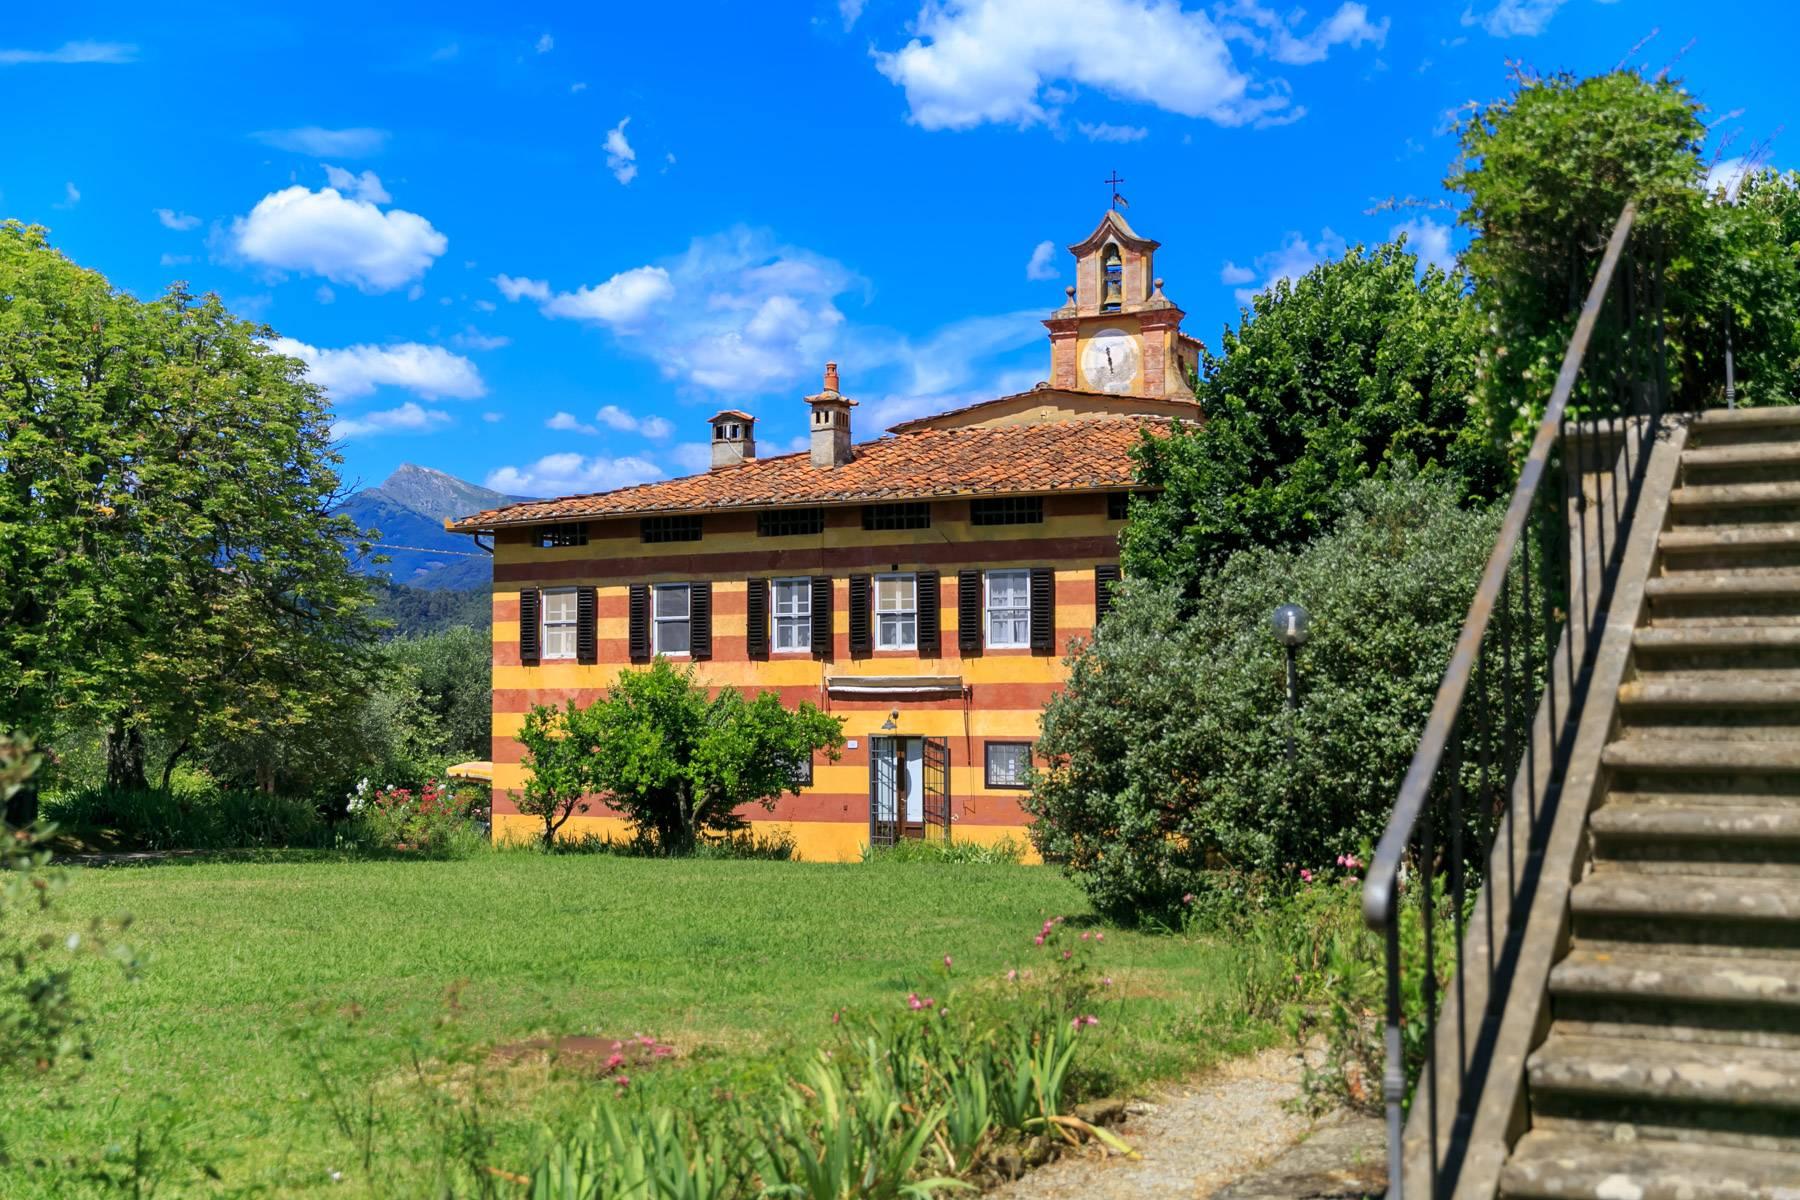 Wunderschönes Bauernhaus aus 1700 auf den Hügeln von Lucca - 18